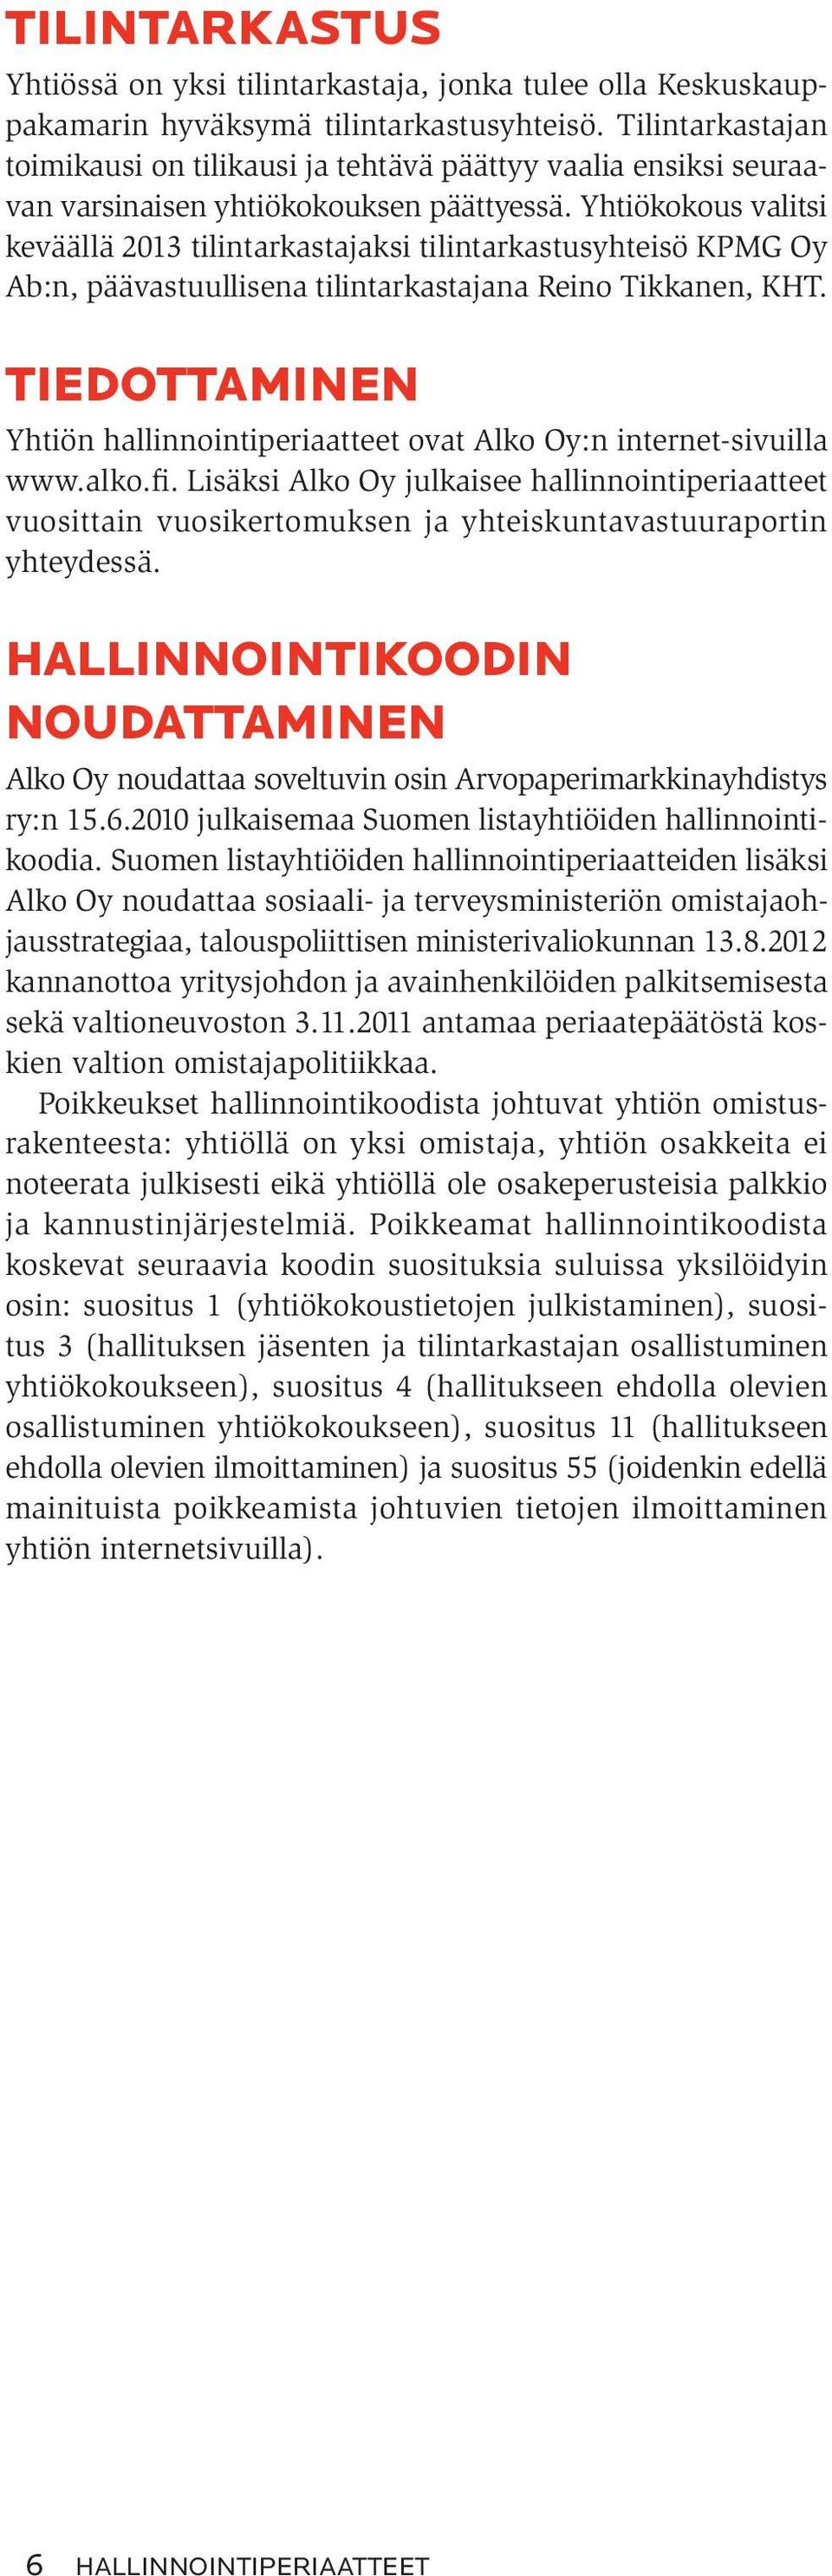 Yhtiökokous valitsi keväällä 2013 tilintarkastajaksi tilintarkastusyhteisö KPMG Oy Ab:n, päävastuullisena tilintarkastajana Reino Tikkanen, KHT.